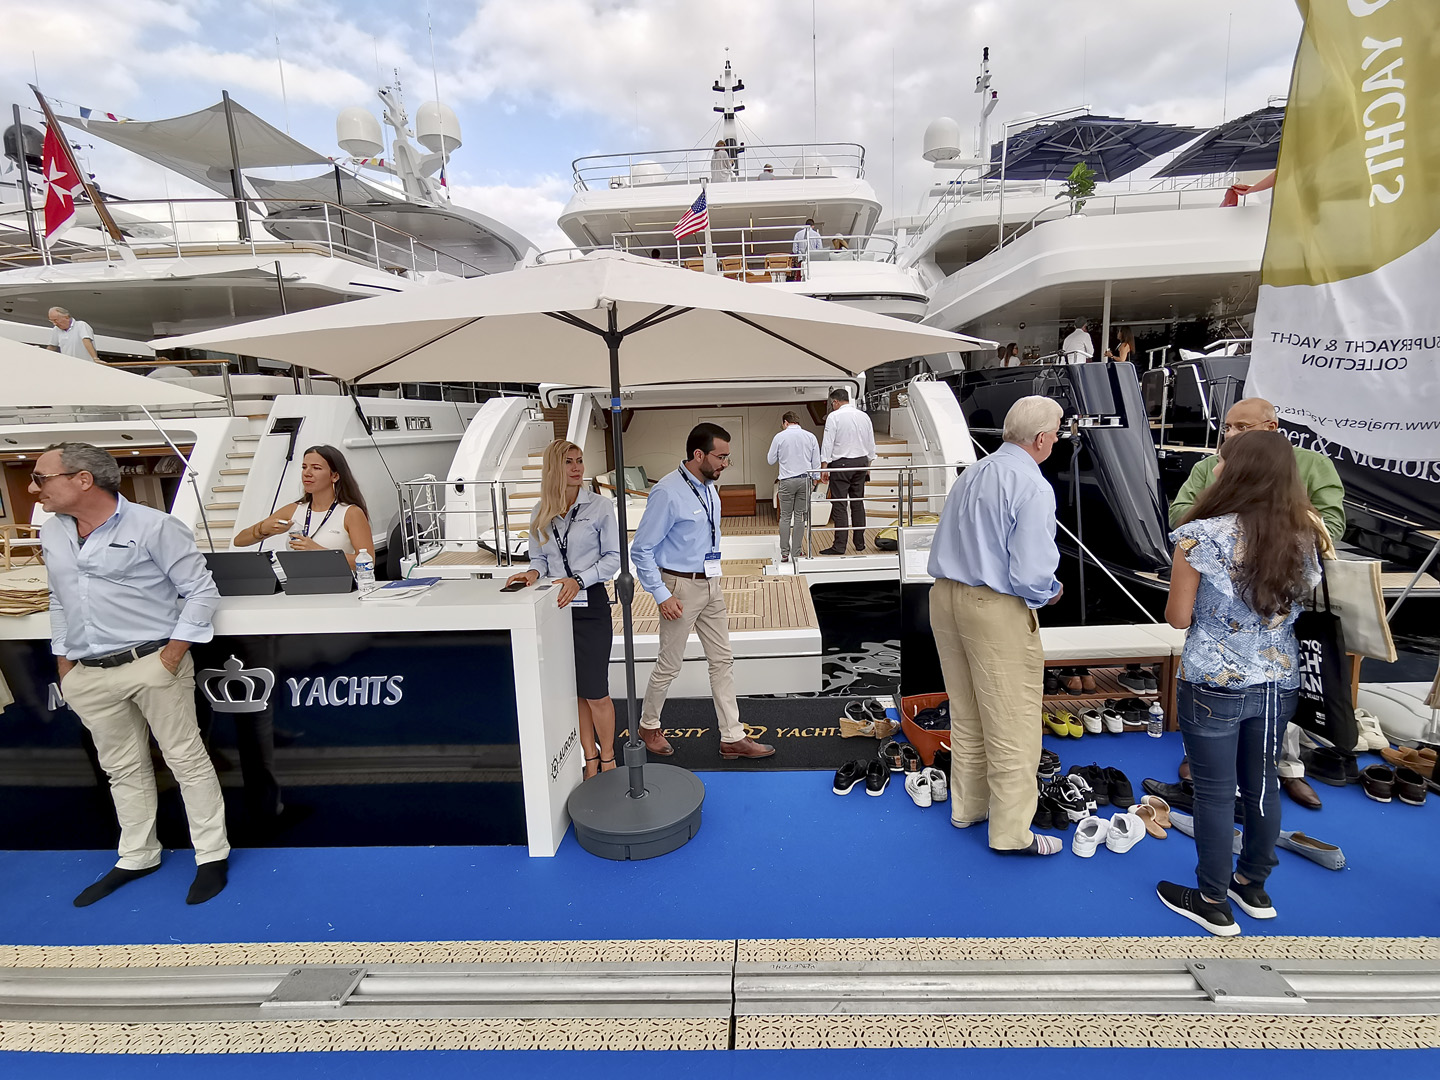 Majesty at Monaco Yacht Show